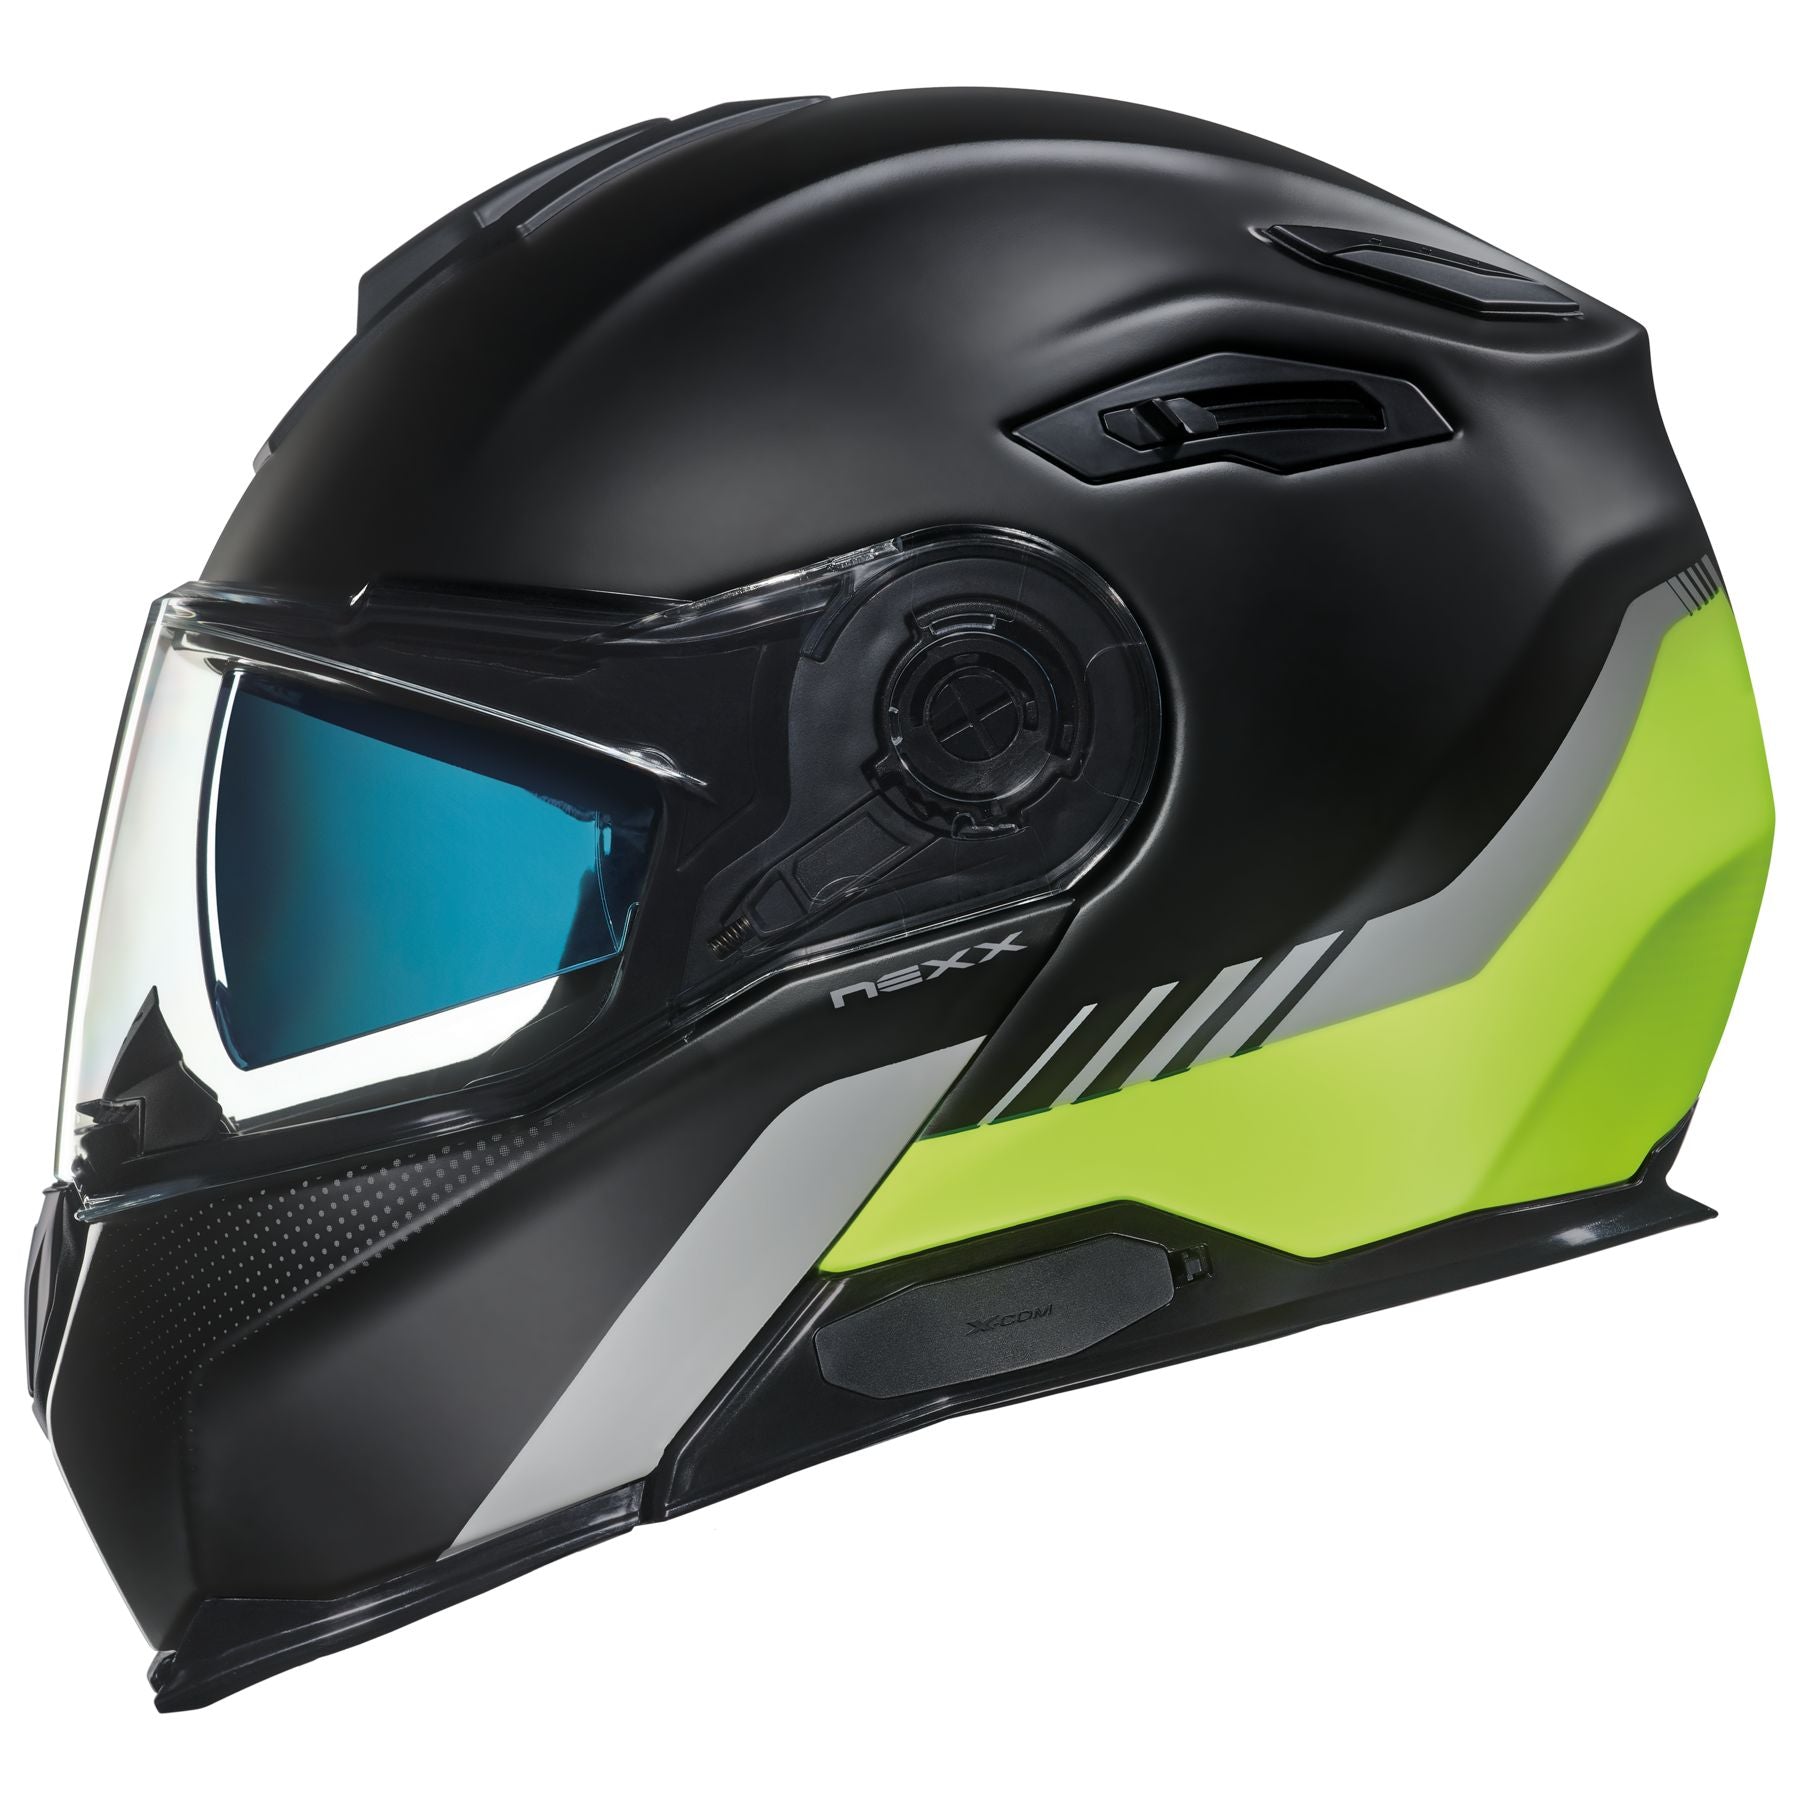 Nexx X-Vilitur Latitude Helmet